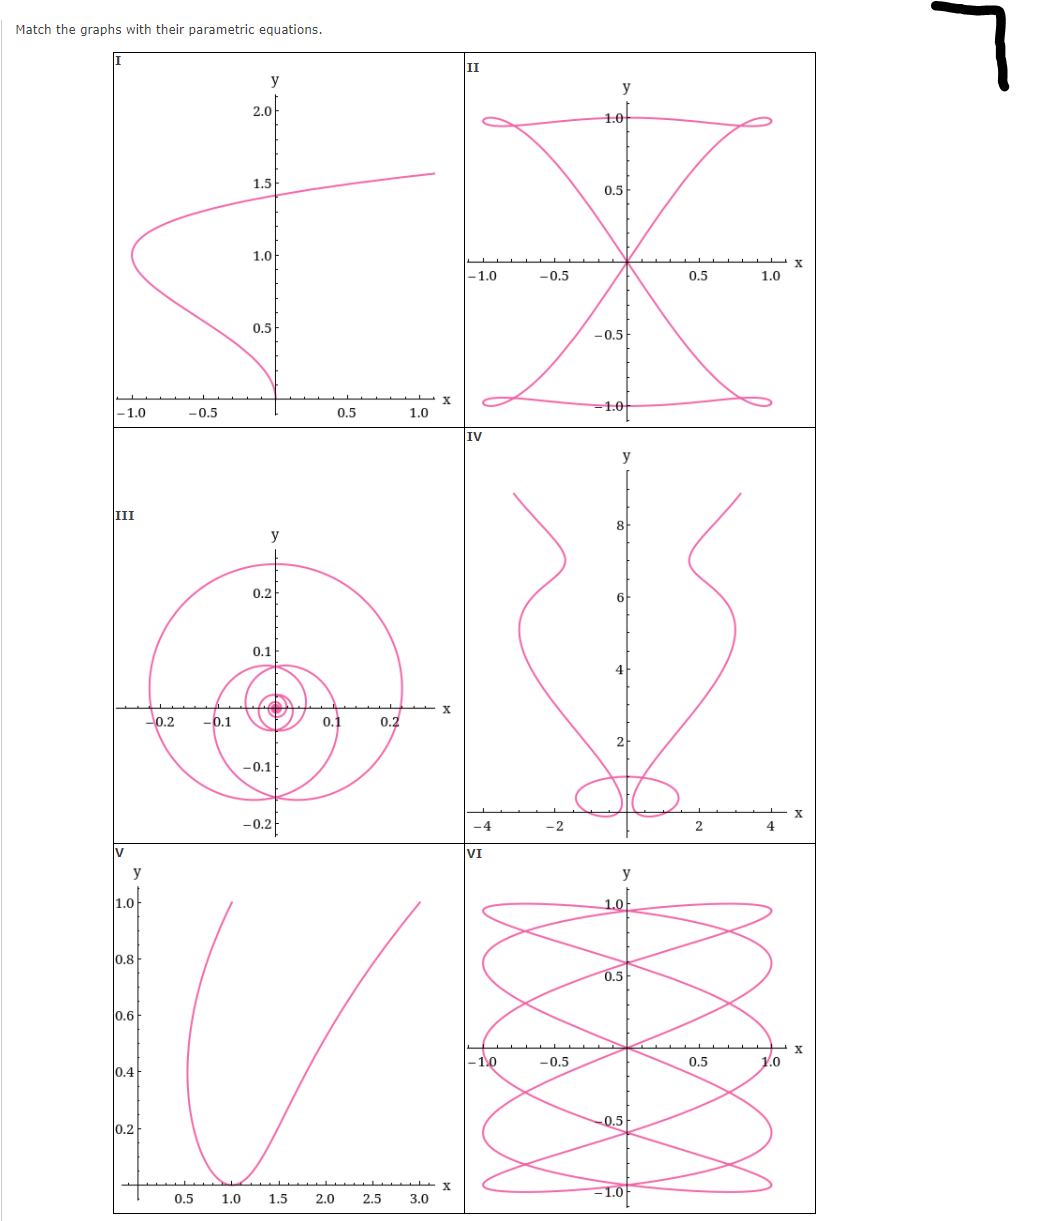 Match the graphs with their parametric equations.
II
y
y
2.0
1.0
1.5
0.5
1.0
|-1.0
-0.5
0.5
1.0
0.5
-0.5
-1.0
-0.5
0.5
1.0
-1.0
IV
y
III
8
y
0.2
0.1
0.2
-0.1
0.1
0.2
2-
-0.1
-0.2
-4
-2
2
4
VI
y
y
1.0
1.0
0.8
0.5
0.6
1.0
-0.5
0.5
1.0
0.4
0.5-
0.2
-1.0
0.5
1.0
1.5
2.0
2.5
3.0
